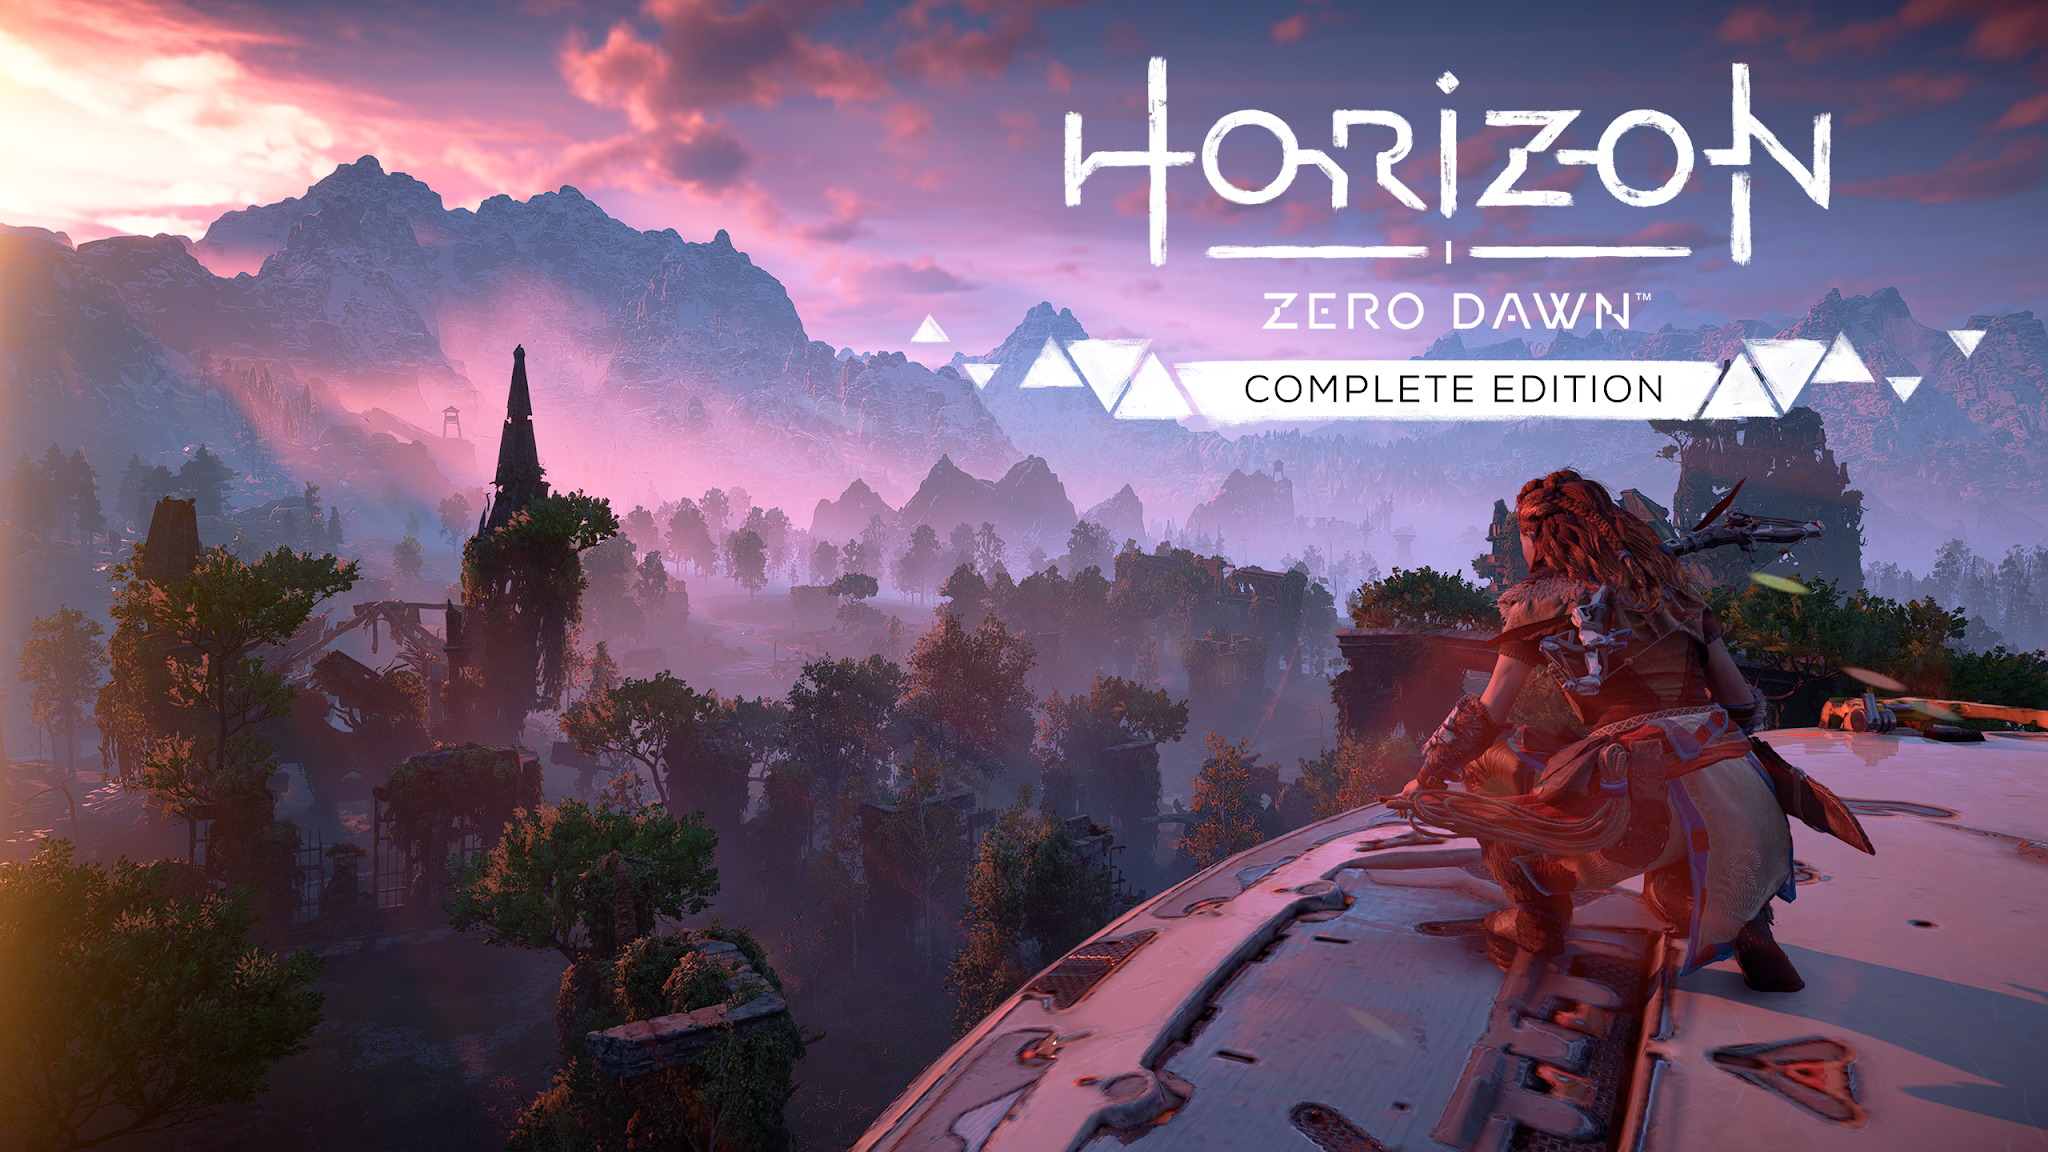 Horizon Zero Dawn Complete Edition para PC chega no dia 7 de agosto